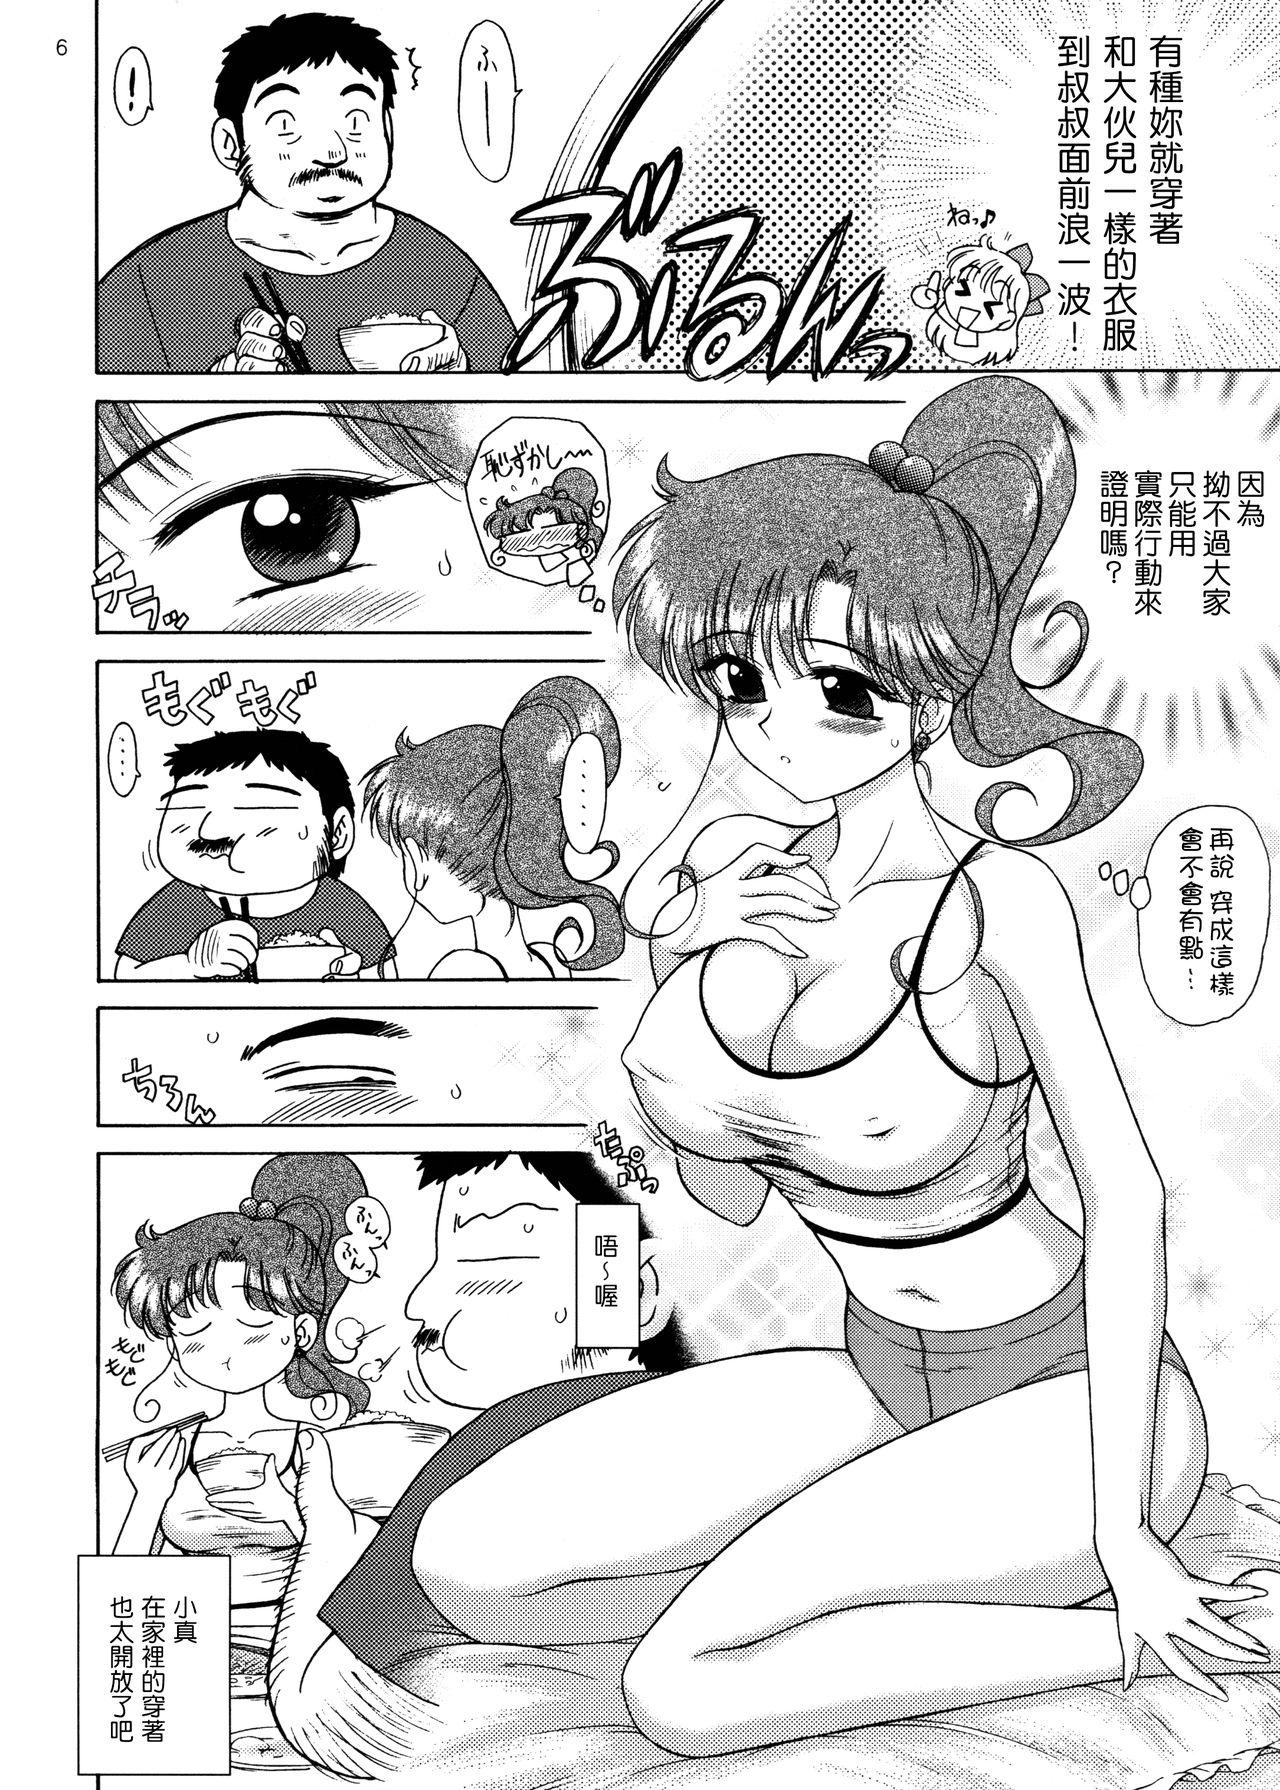 Chat IN A SILENT WAY - Sailor moon | bishoujo senshi sailor moon Tittyfuck - Page 6